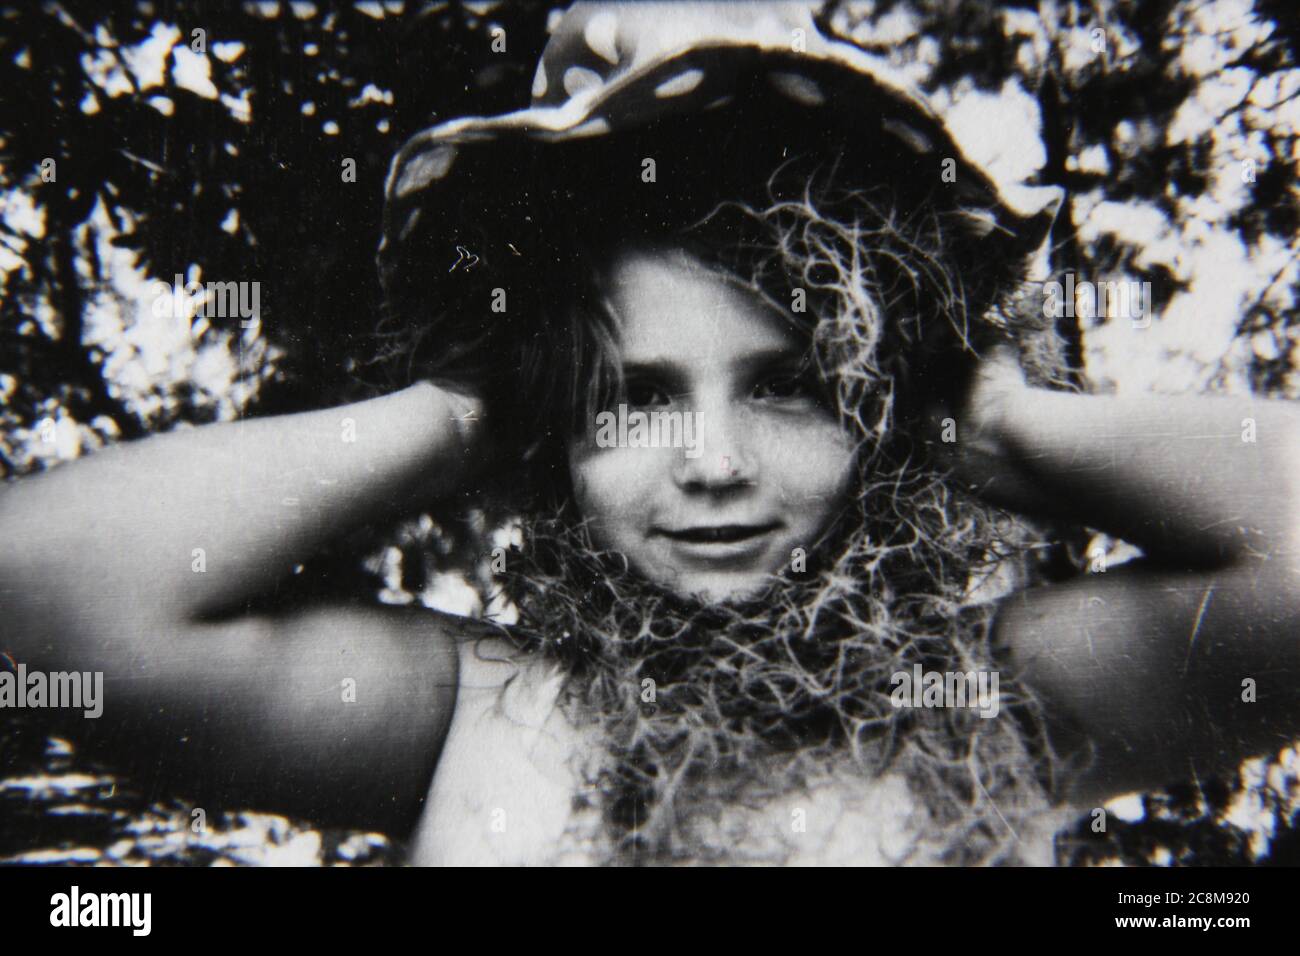 Feine 70er Jahre Vintage schwarz-weiß Lifestyle-Fotografie von einem jungen Teenager-Mädchen goofing für die Kamera. Stockfoto